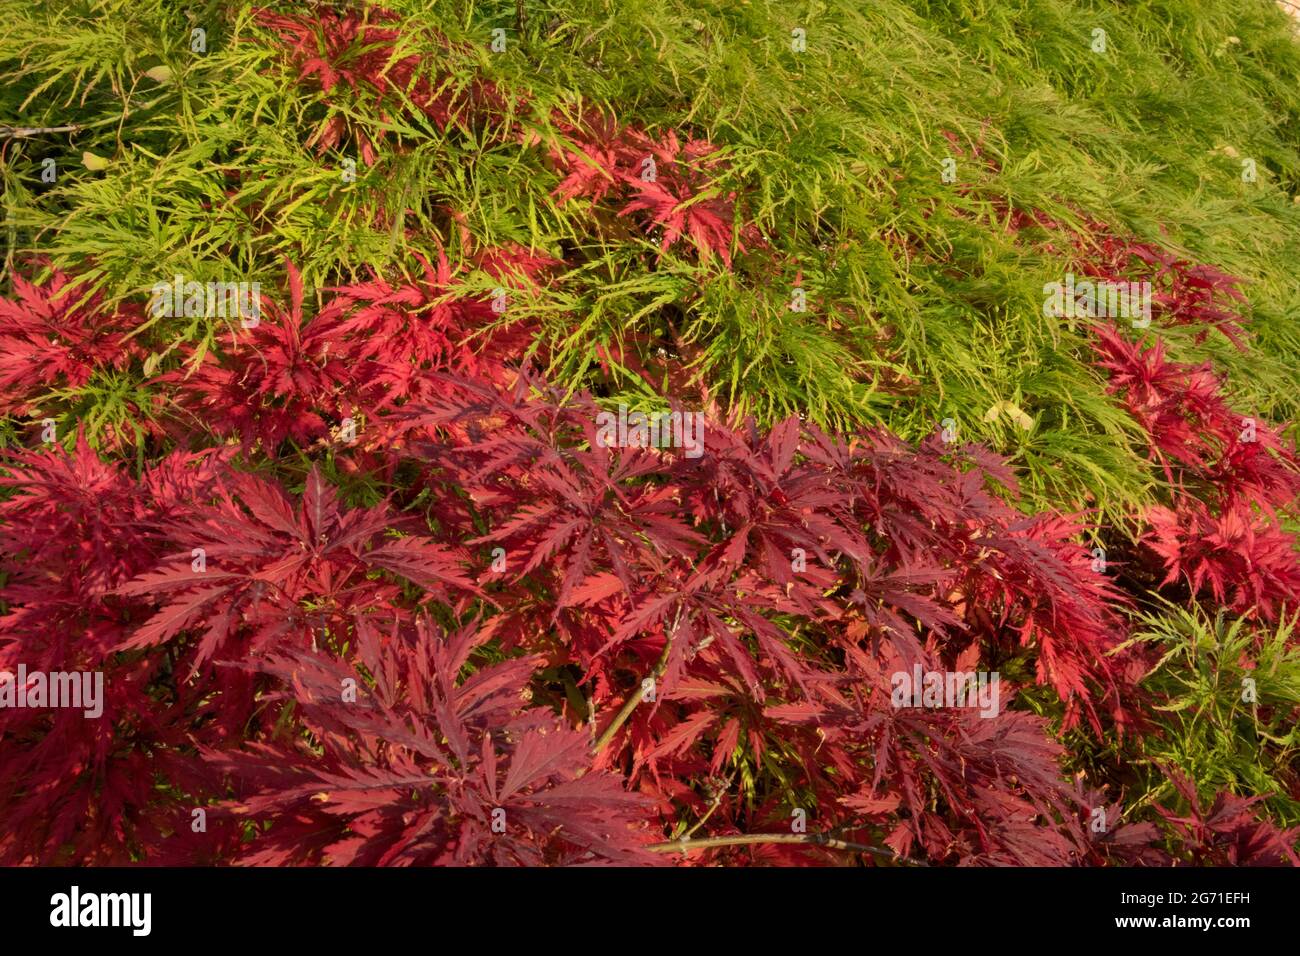 Rosso e Verde Tammukeyama Acero Giapponese, Acer palmatum var. Dissectum, Parma, Italia Foto Stock